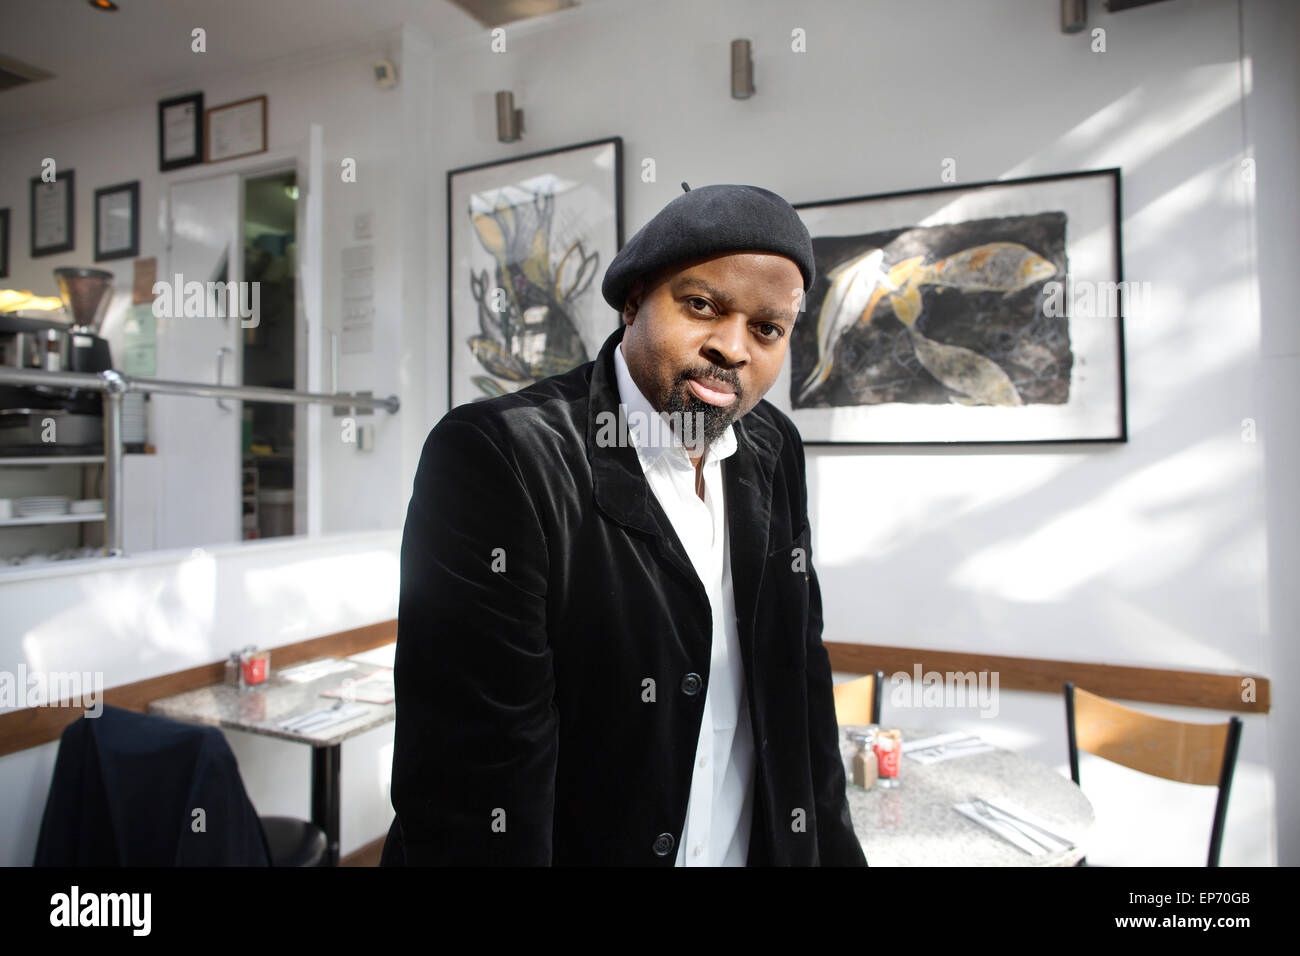 Ben Okri, poète et écrivain nigérian, photographié à Londres, Royaume-Uni Banque D'Images